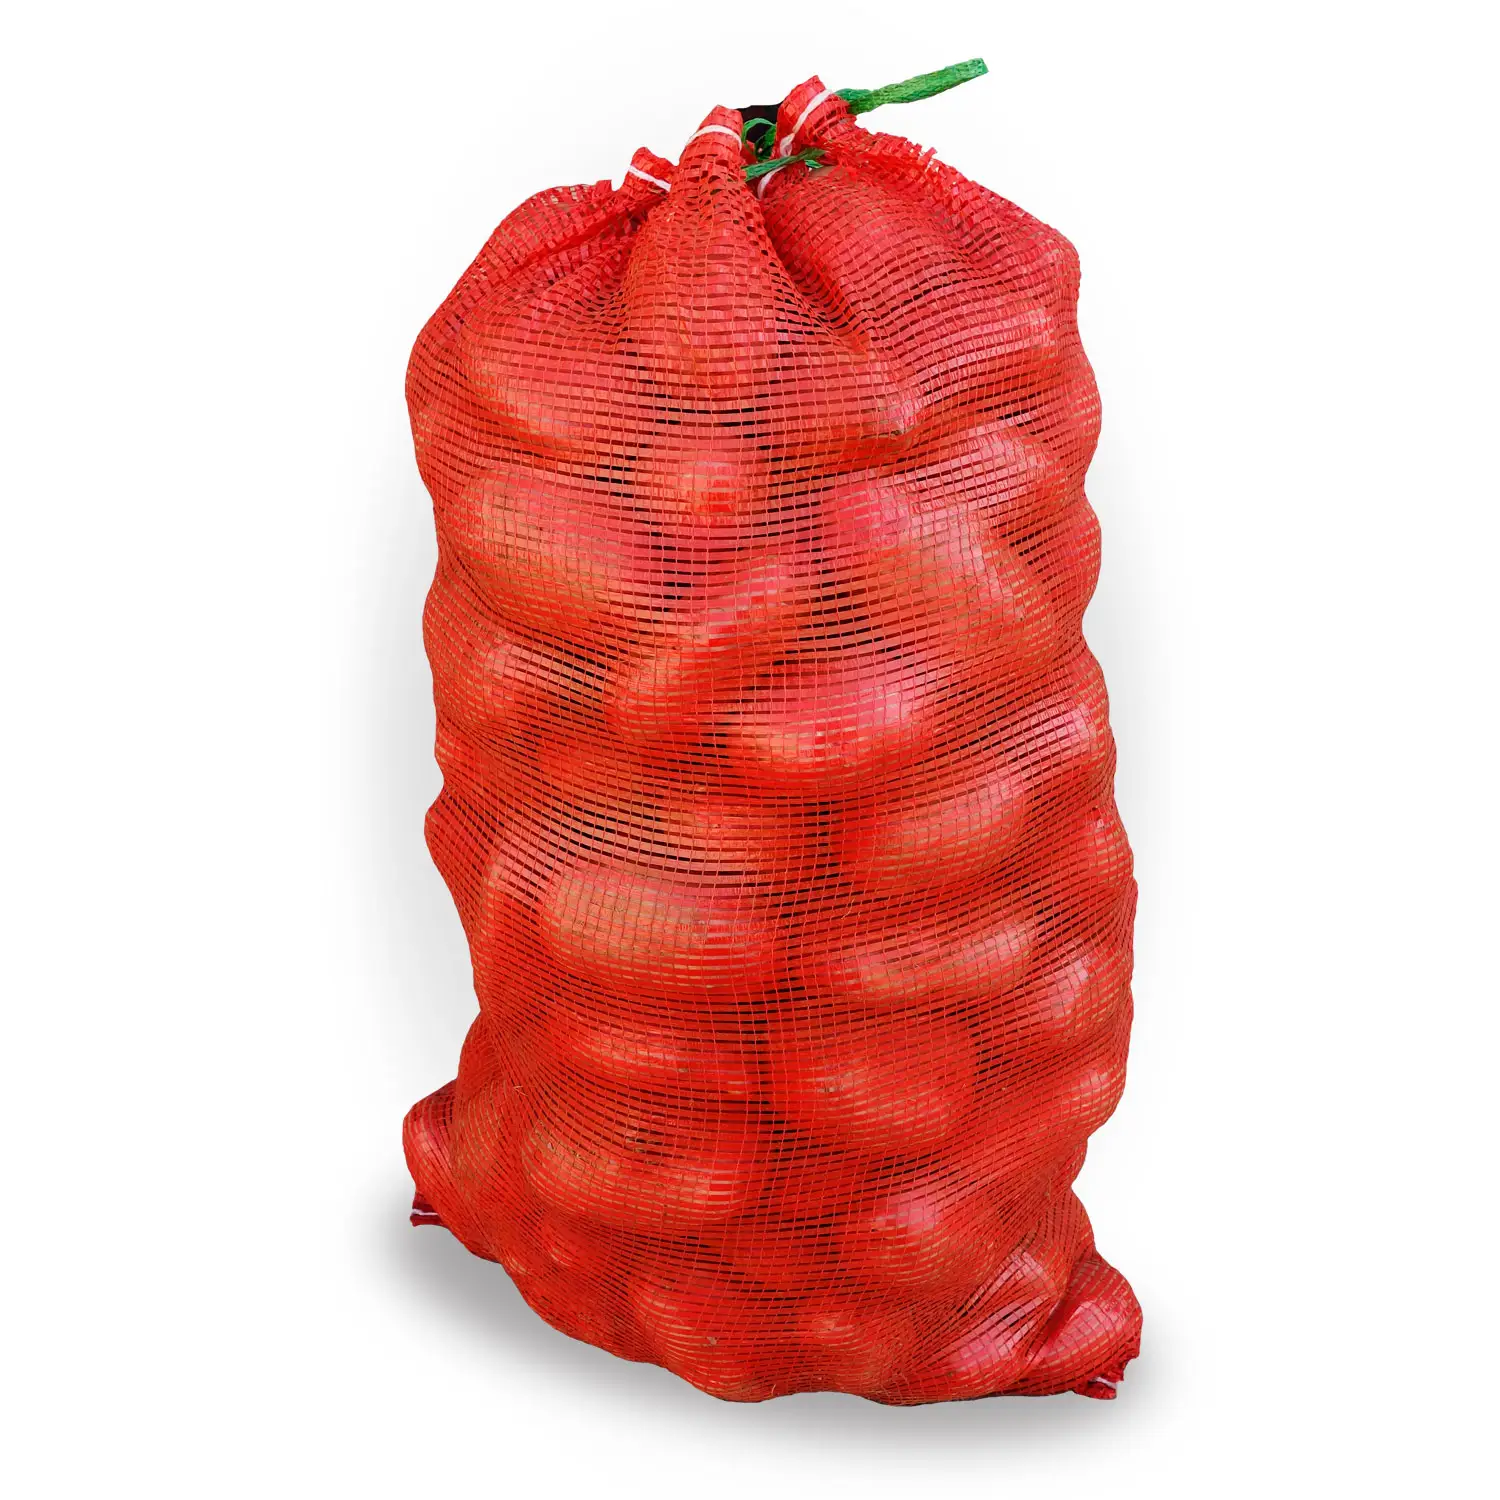 Barato preço pe rede de vegetais saco de malha para frutas cebolas batata embalagem